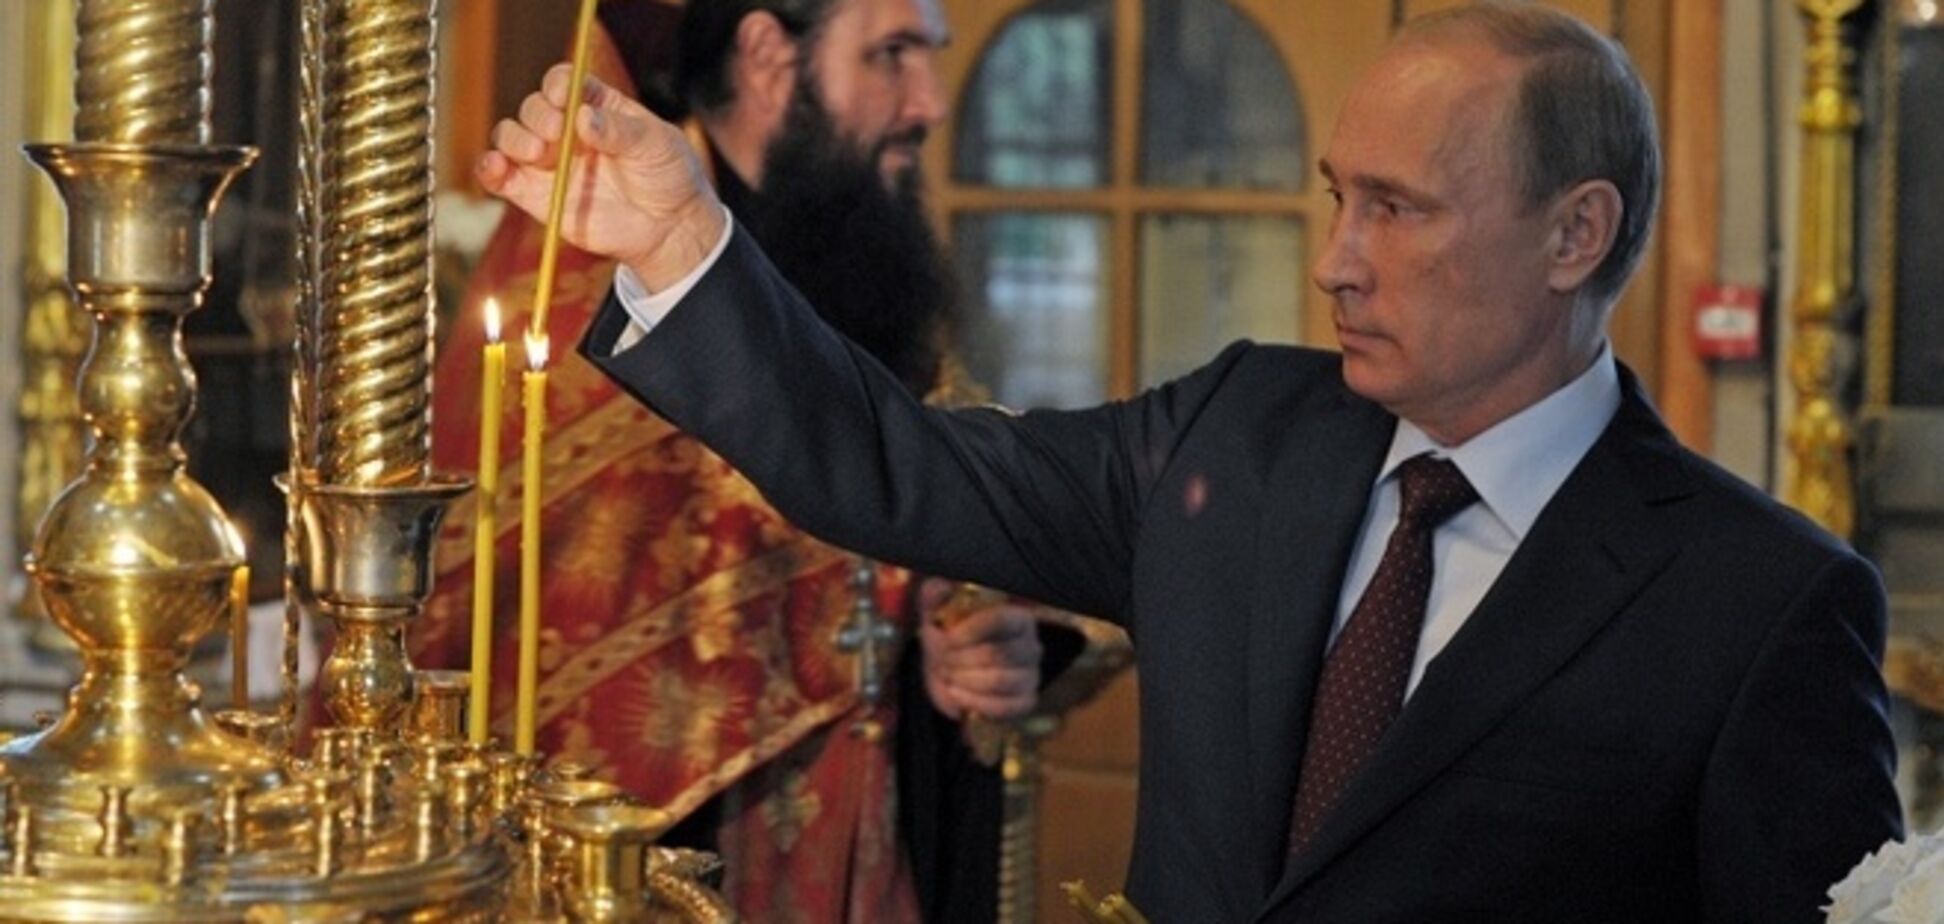 Истинно верующие должны назвать Путина антихристом